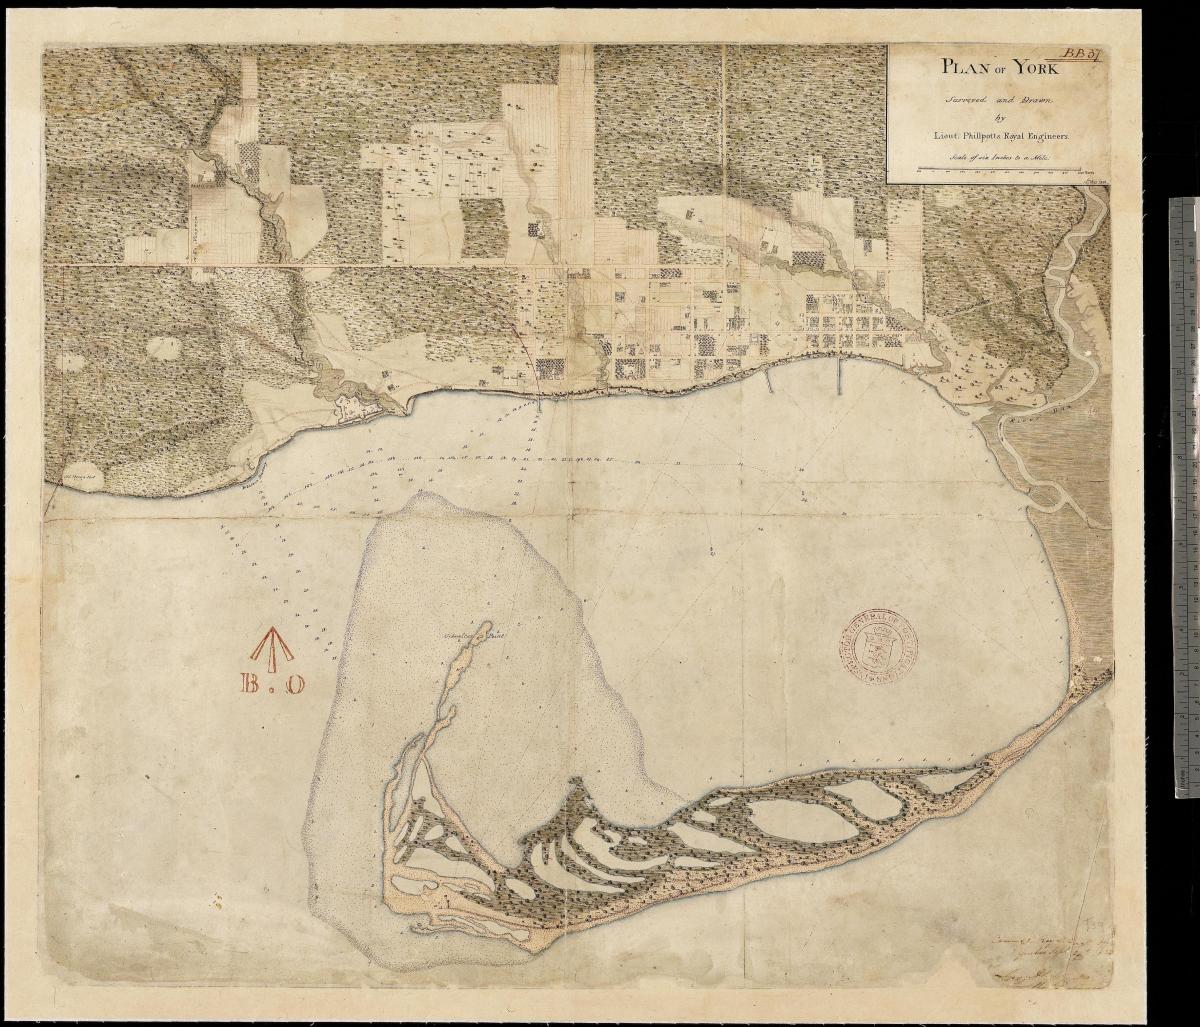 Kaart van die land van York, Toronto se eerste centure 1787-1884